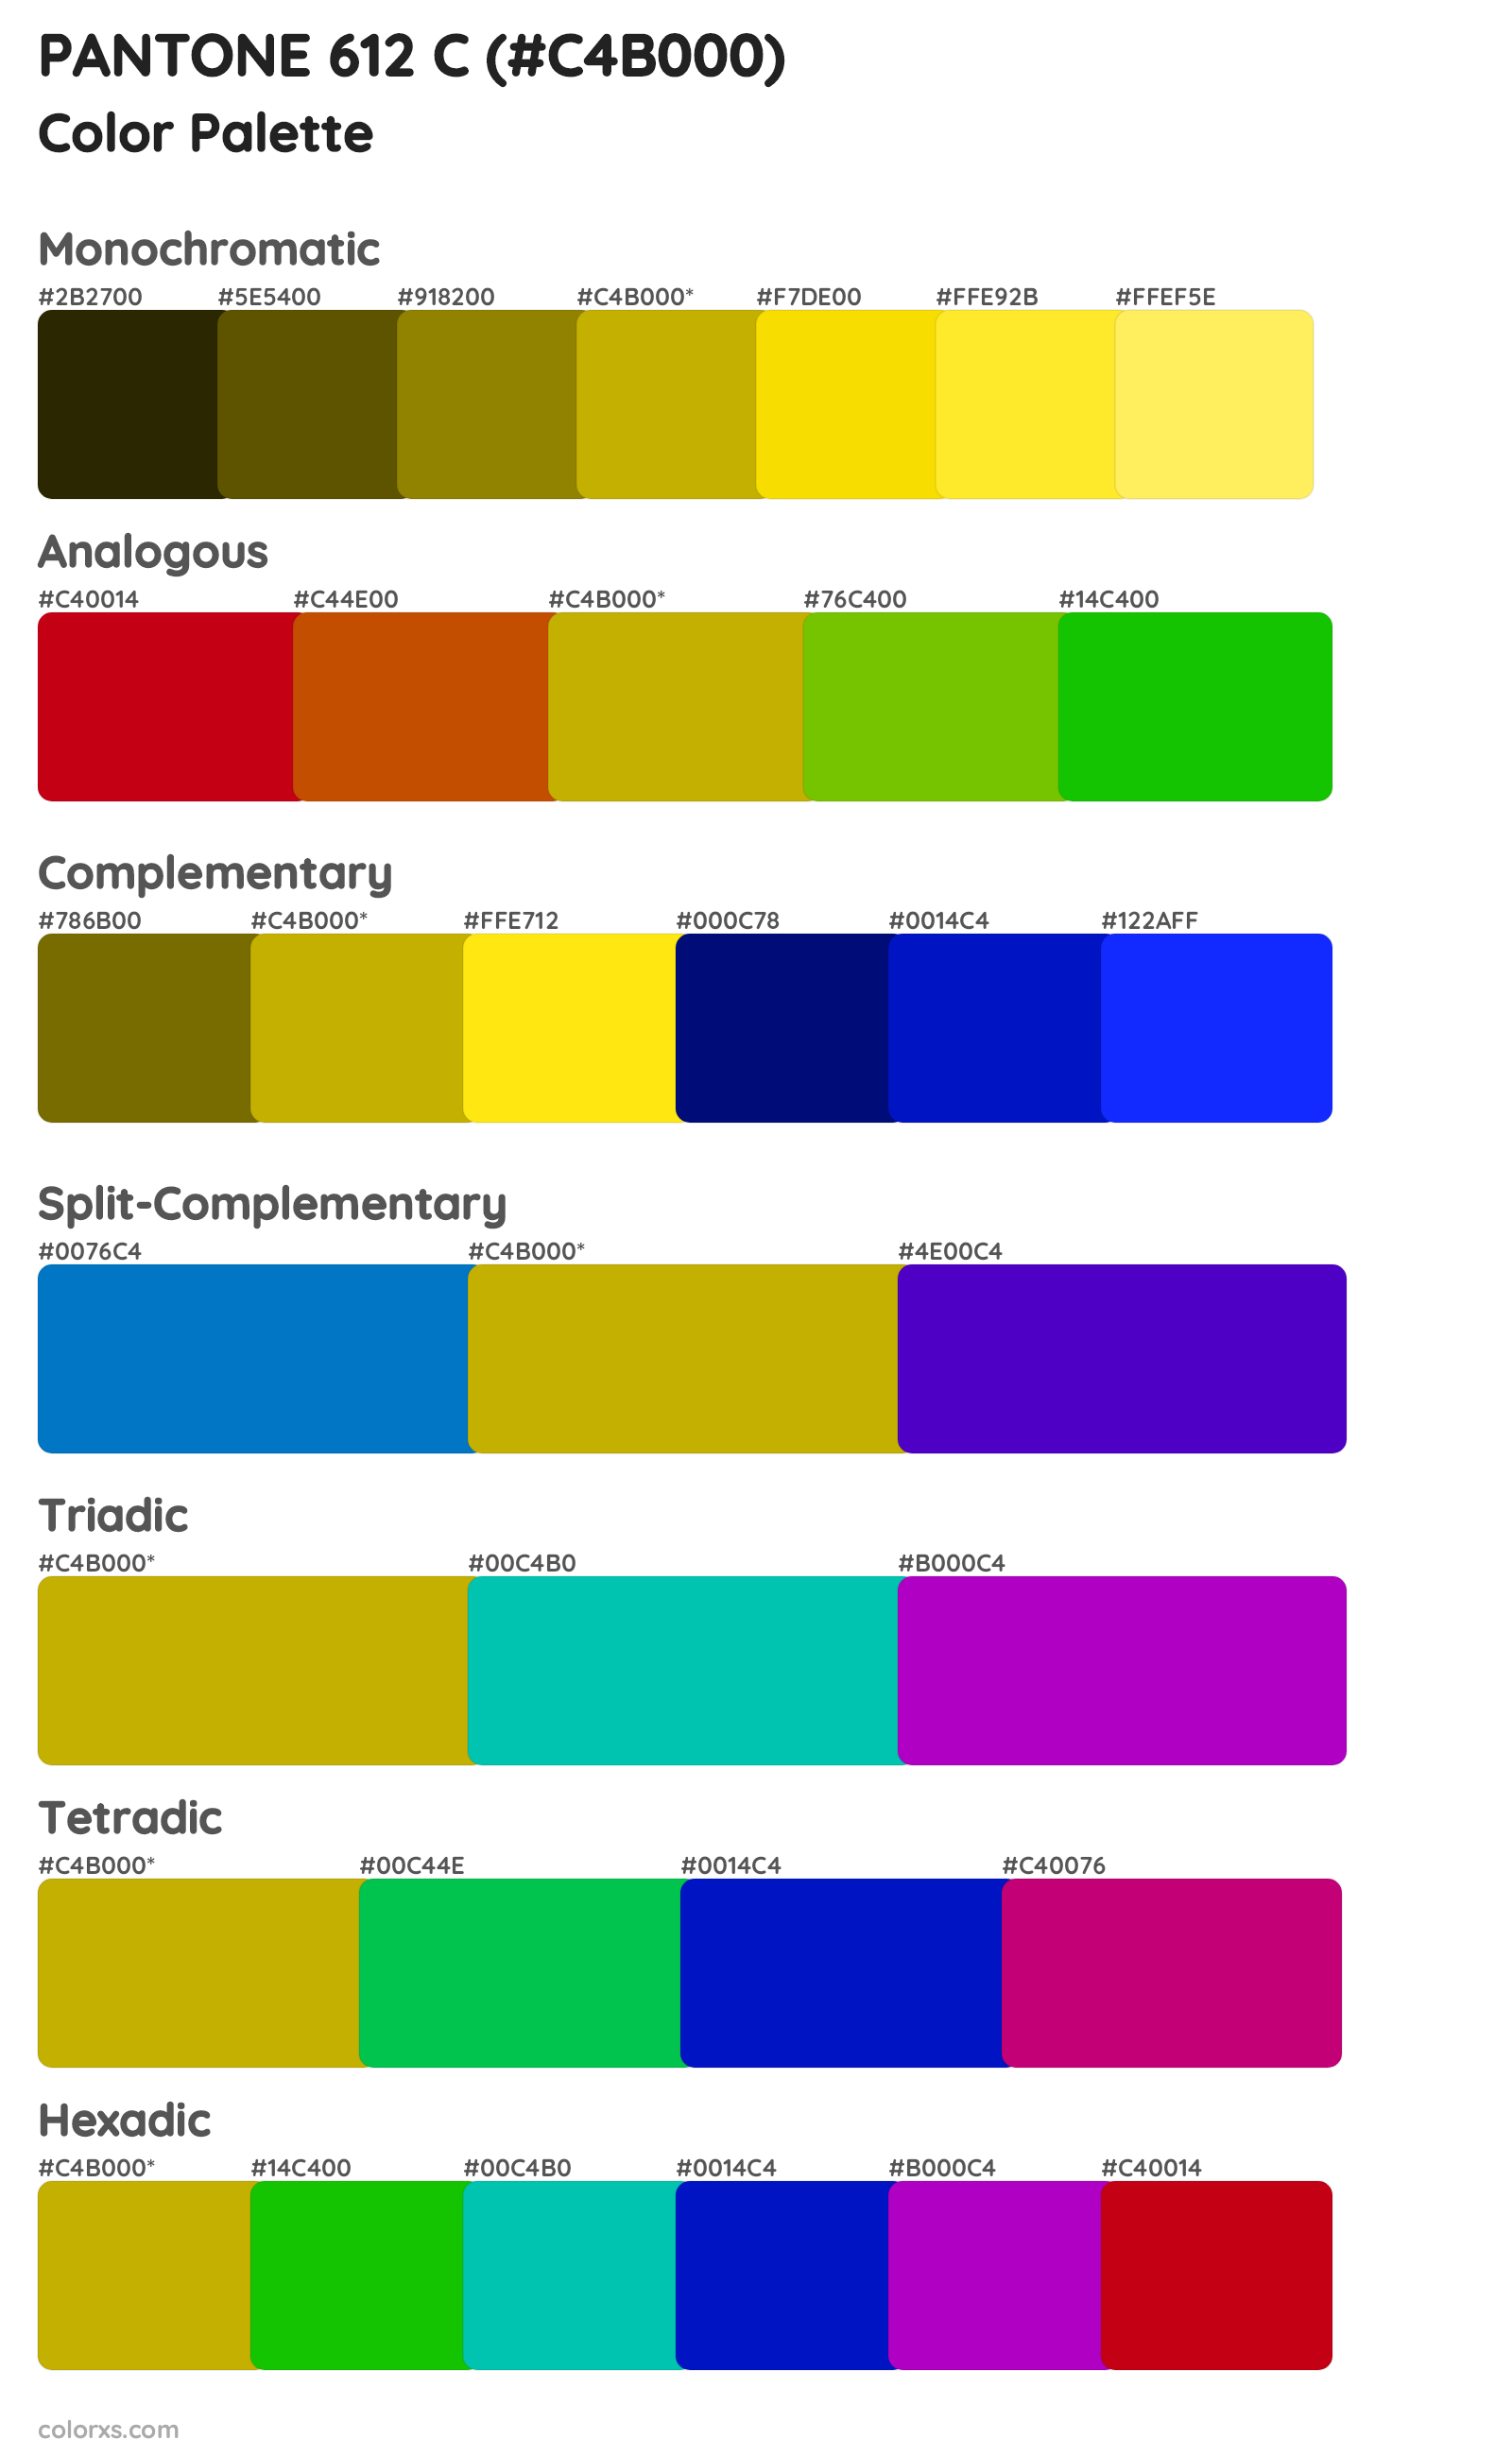 PANTONE 612 C Color Scheme Palettes